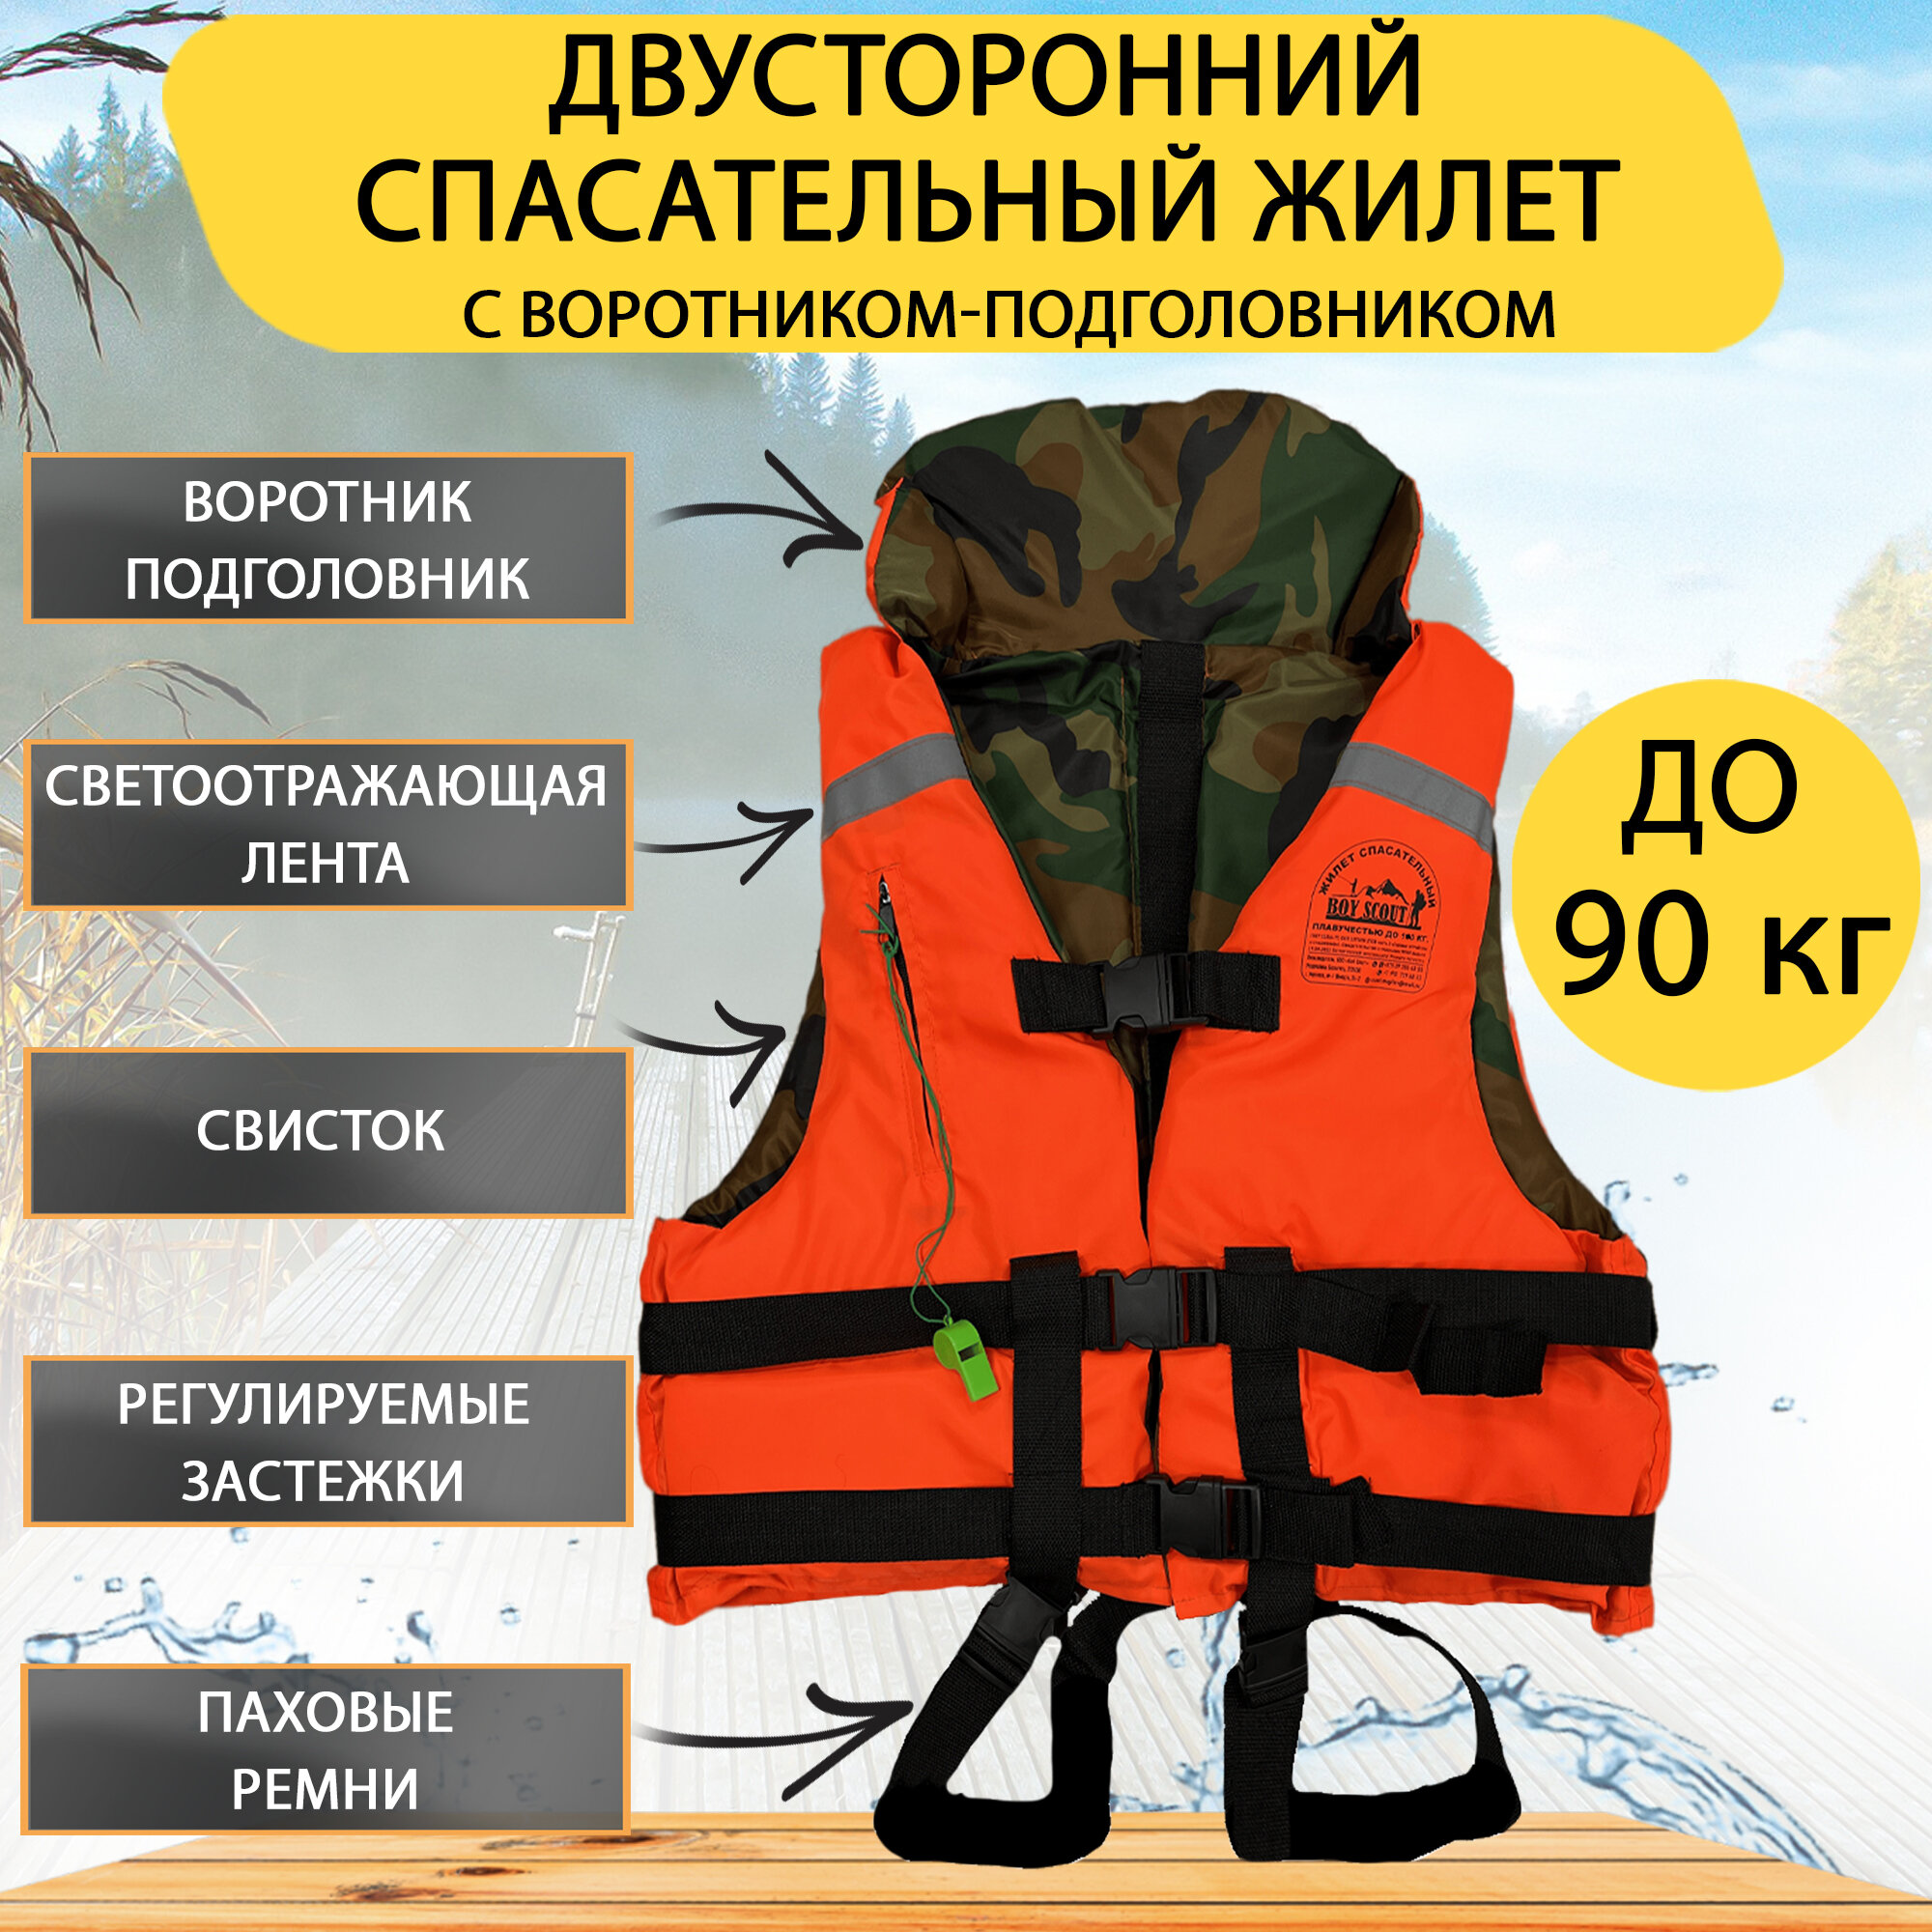 Спасательный жилет BOY SCOUT двусторонний, до 90 кг. С подголовником, Беларусь